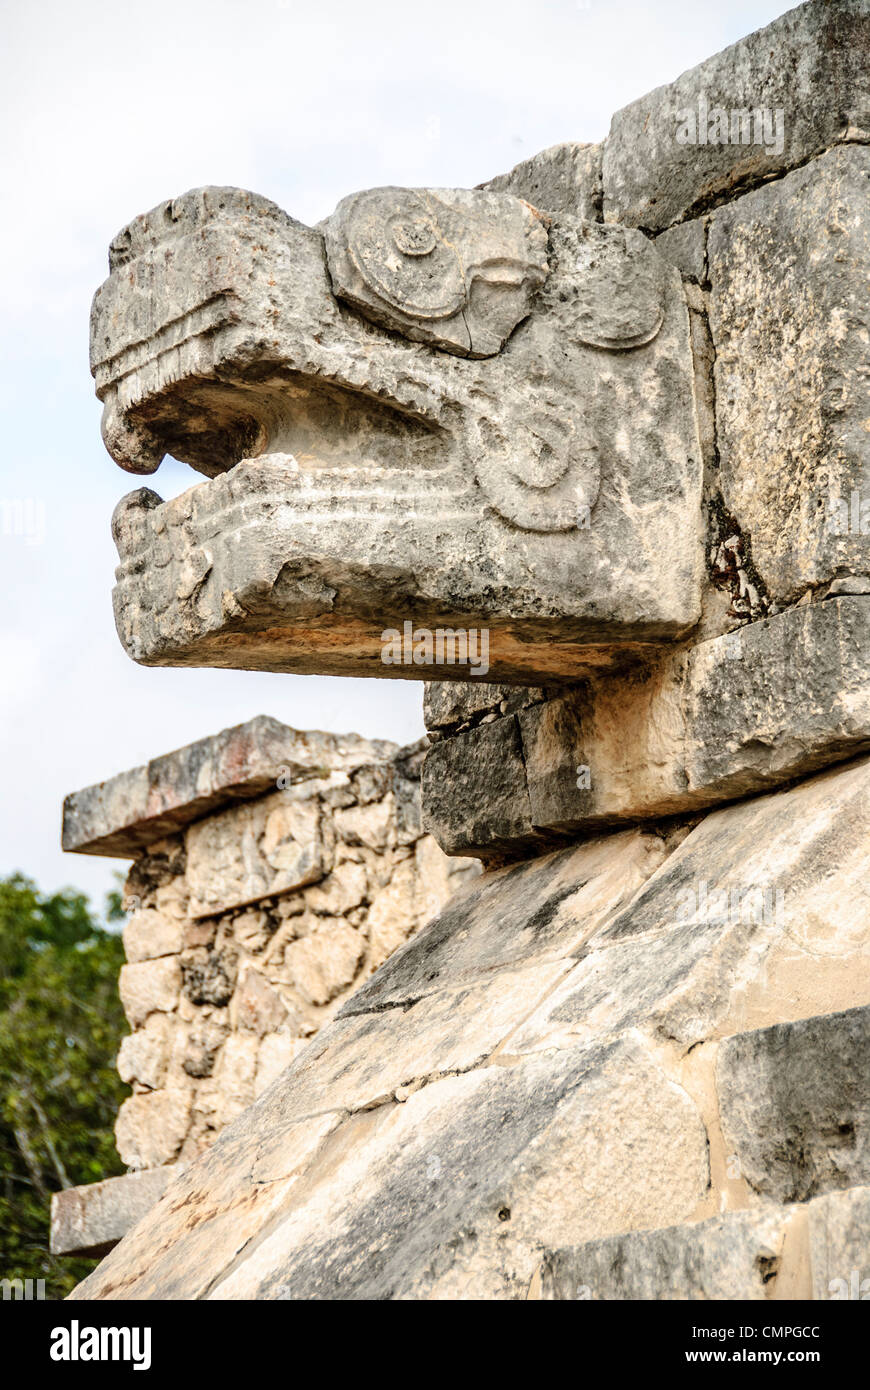 CHICHEN ITZA, Mexique - tête de Jaguar sculpté dans la pierre à Chichen Itza ruines mayas civilisations au Mexique. Banque D'Images